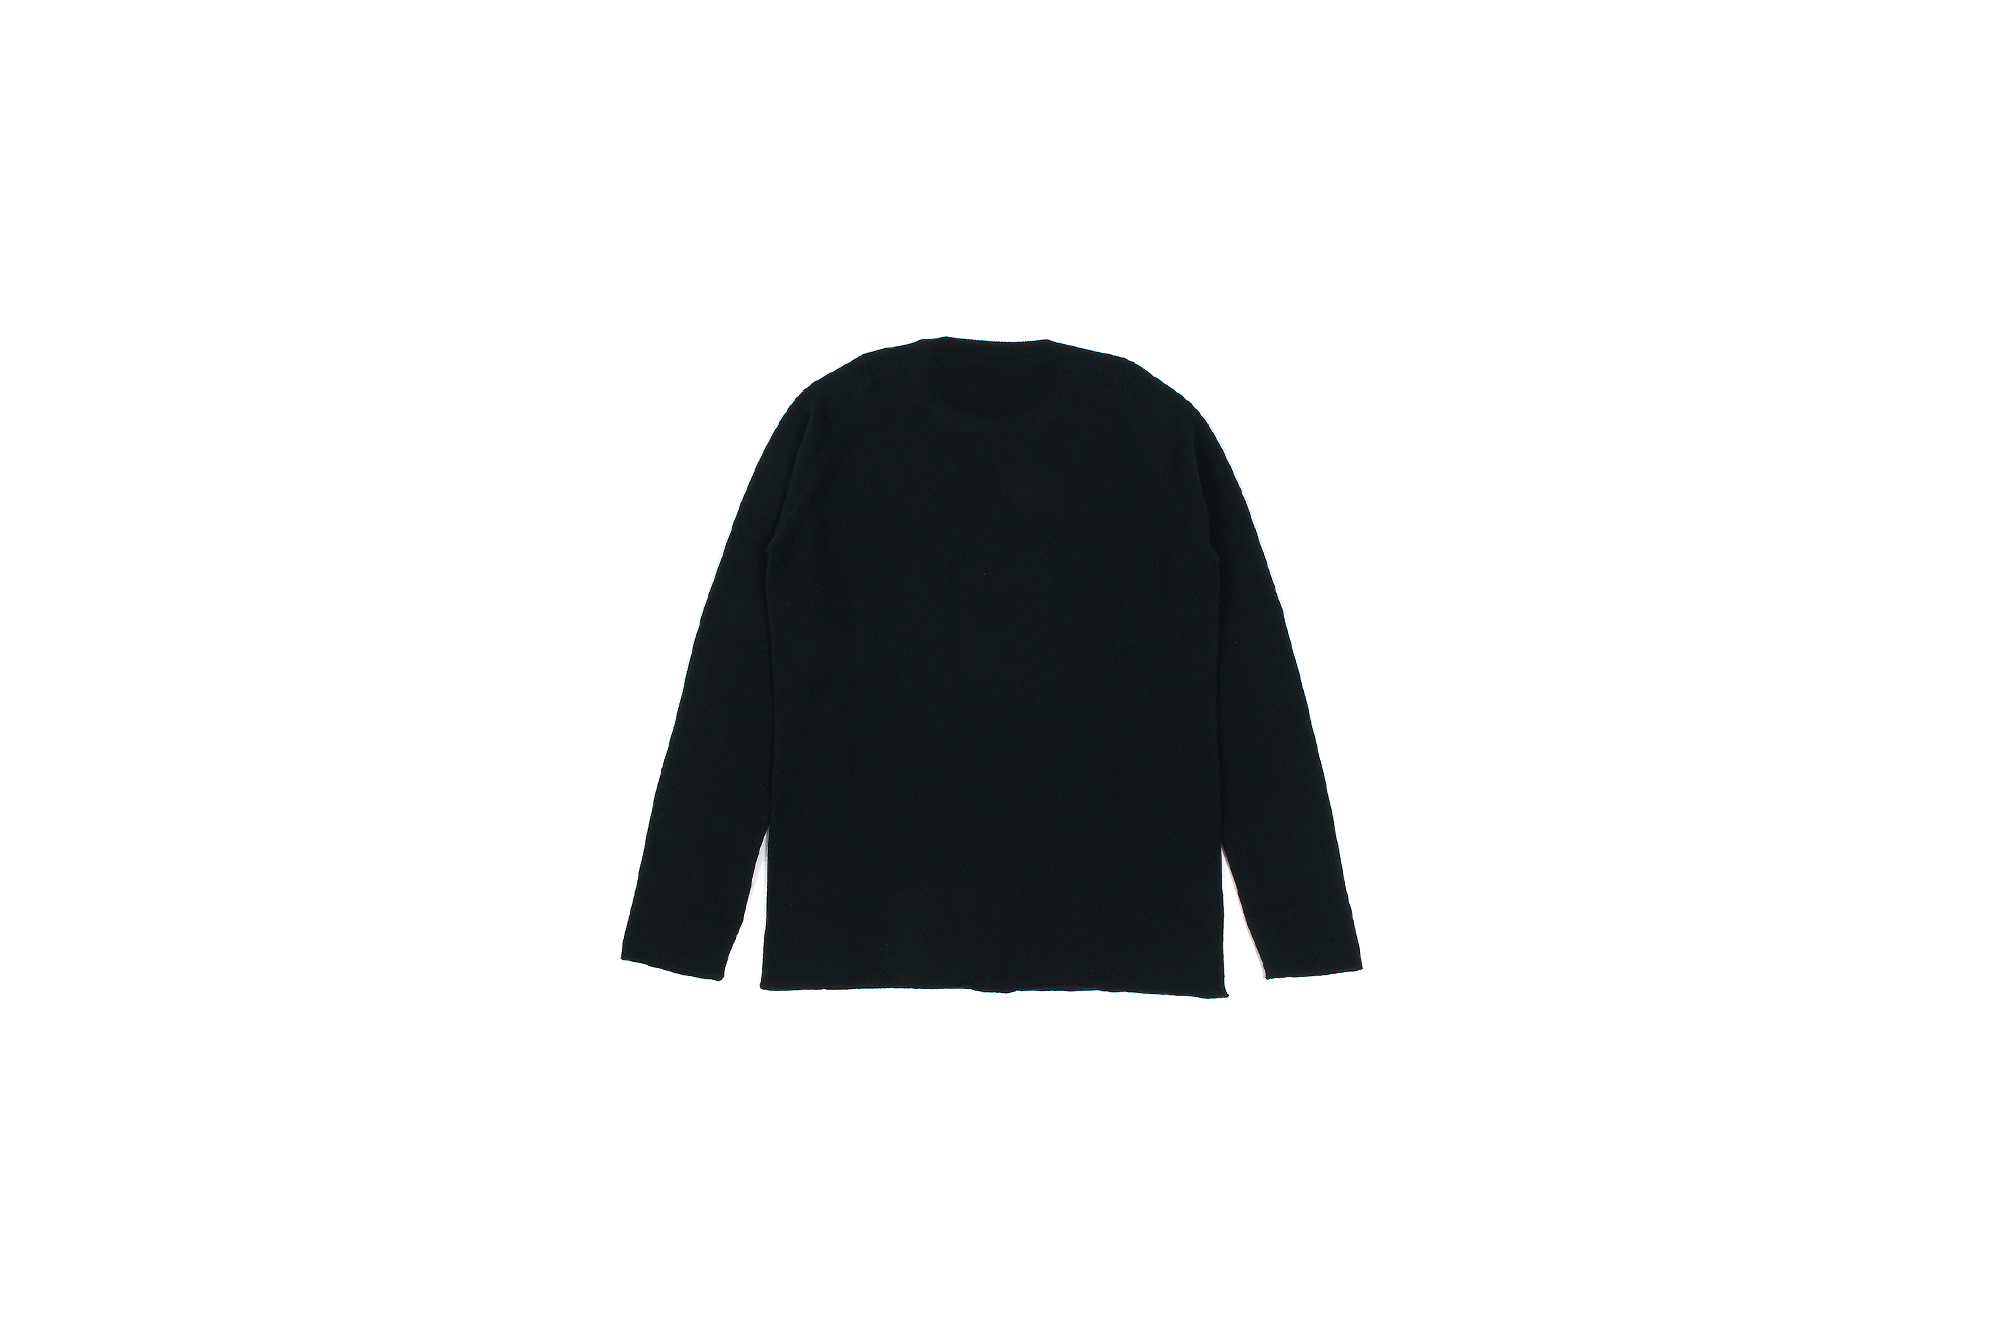 lucien pellat-finet(ルシアン ペラフィネ) Skull Camera Cashmere Sweater (スカル カメラ カシミア セーター) インターシャ カシミア スカル セーター BLACK × NIVEOUS (ブラック × ホワイト) made in scotland (スコットランド製) 2020 春夏新作 愛知 名古屋 altoediritto アルトエデリット